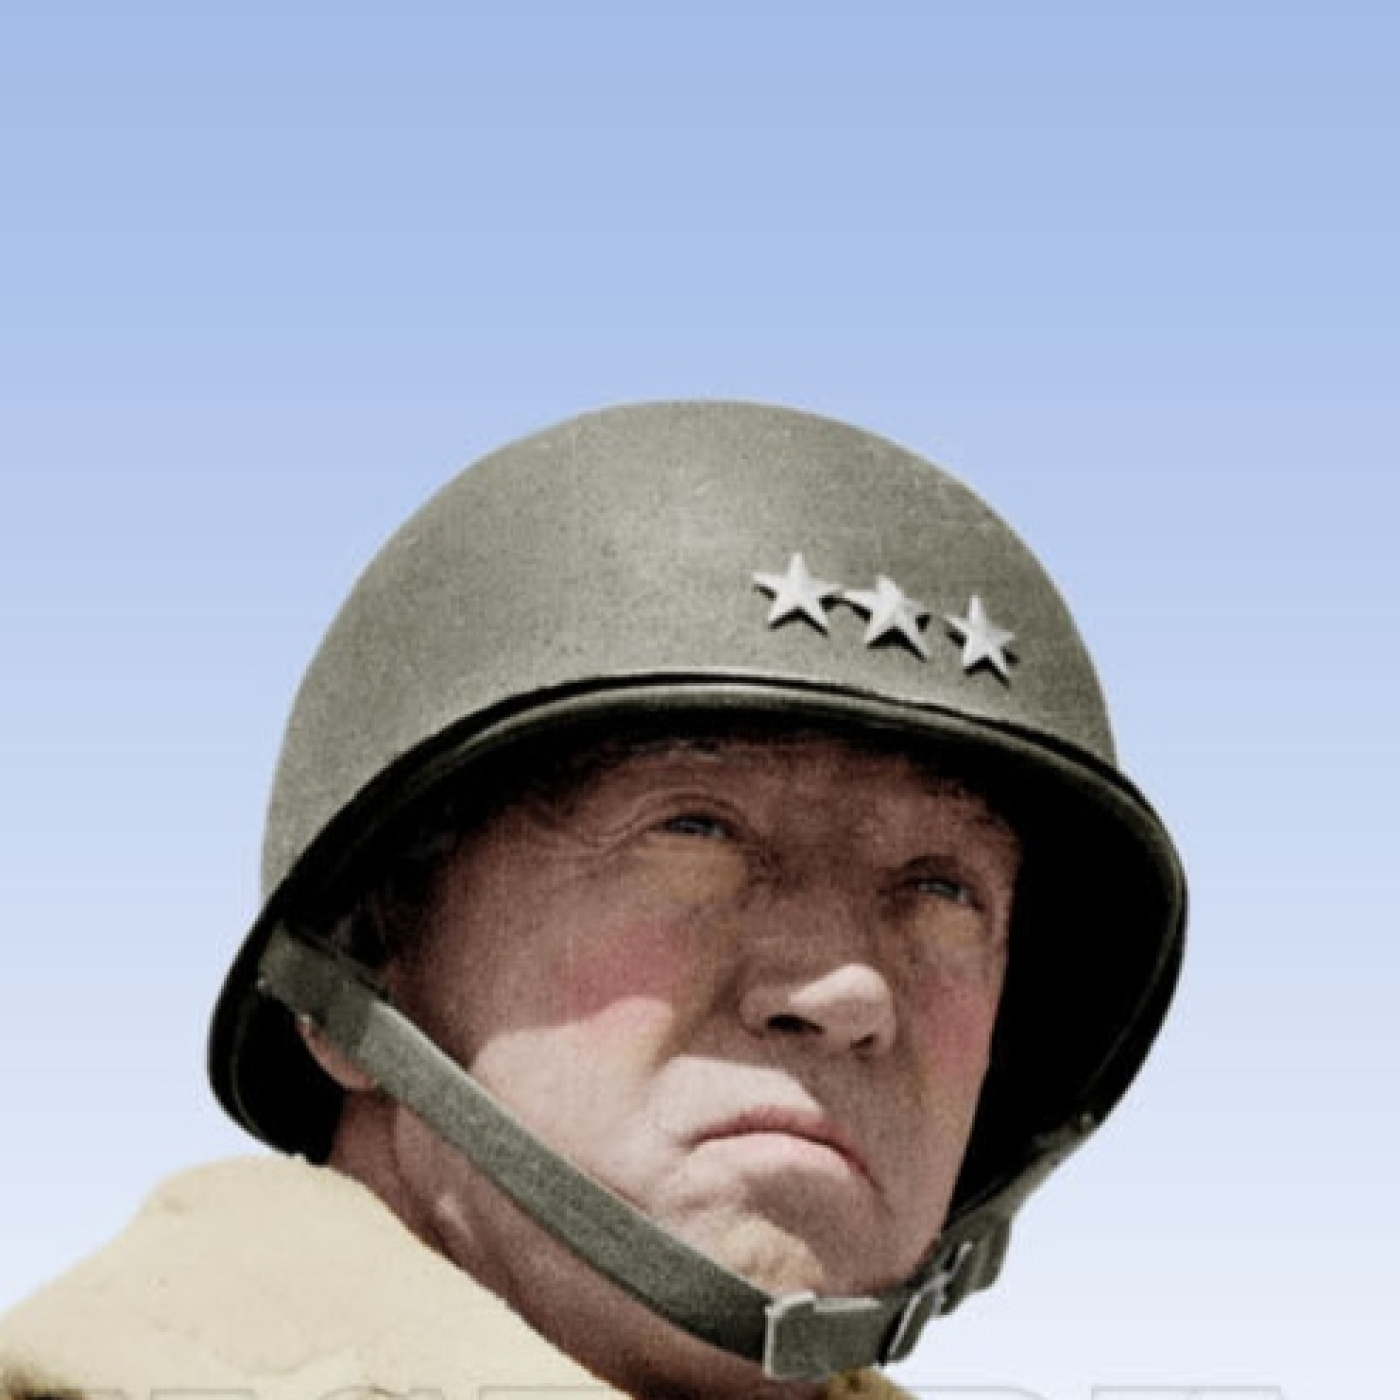 General Patton, una biografía (Colaboración) - HdG 2.0 - Episodio exclusivo para mecenas